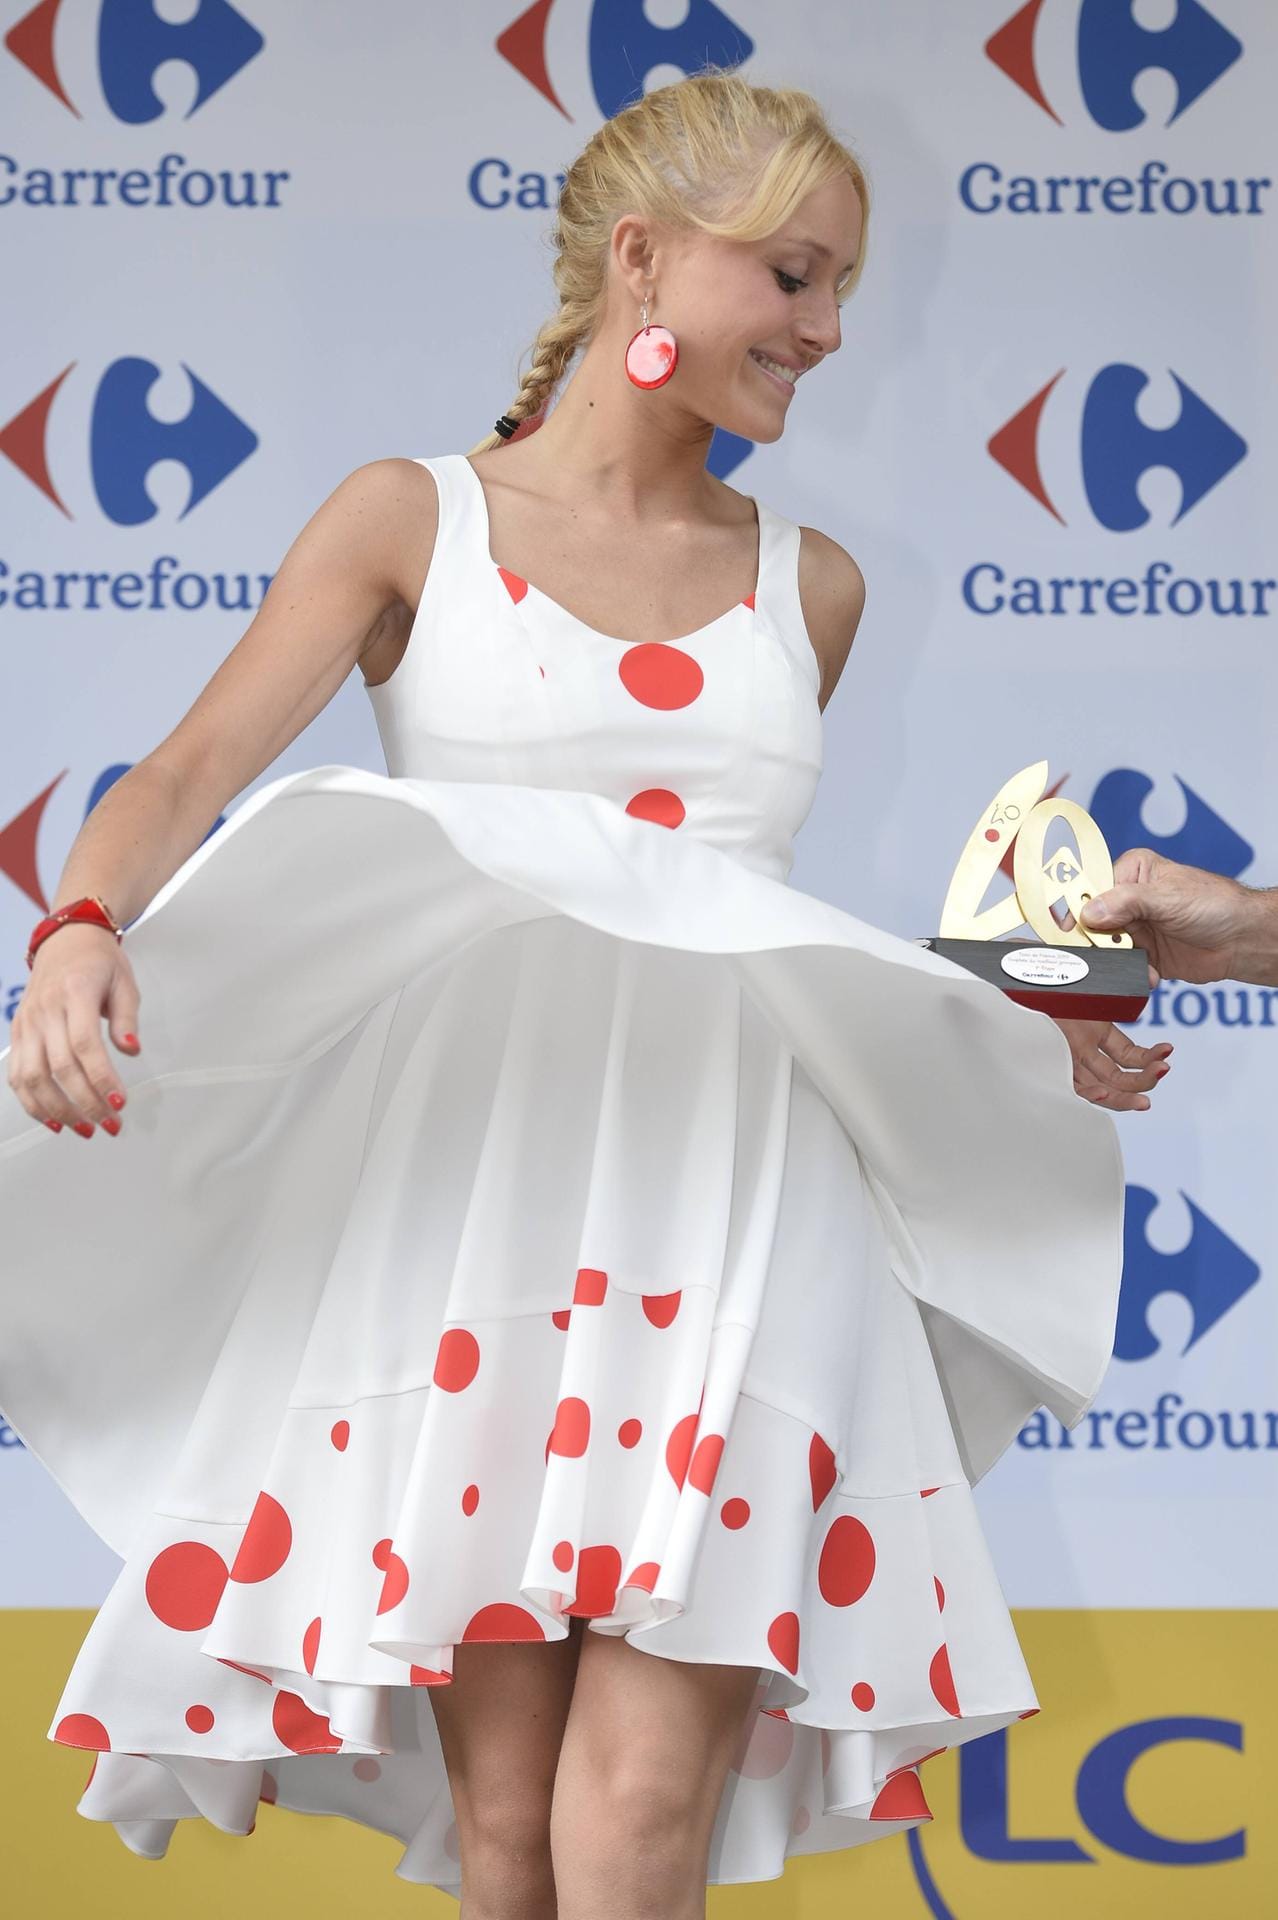 O là là: Diese Blondine punktet bei der Tour de France nicht nur mit ihrem Kleid.